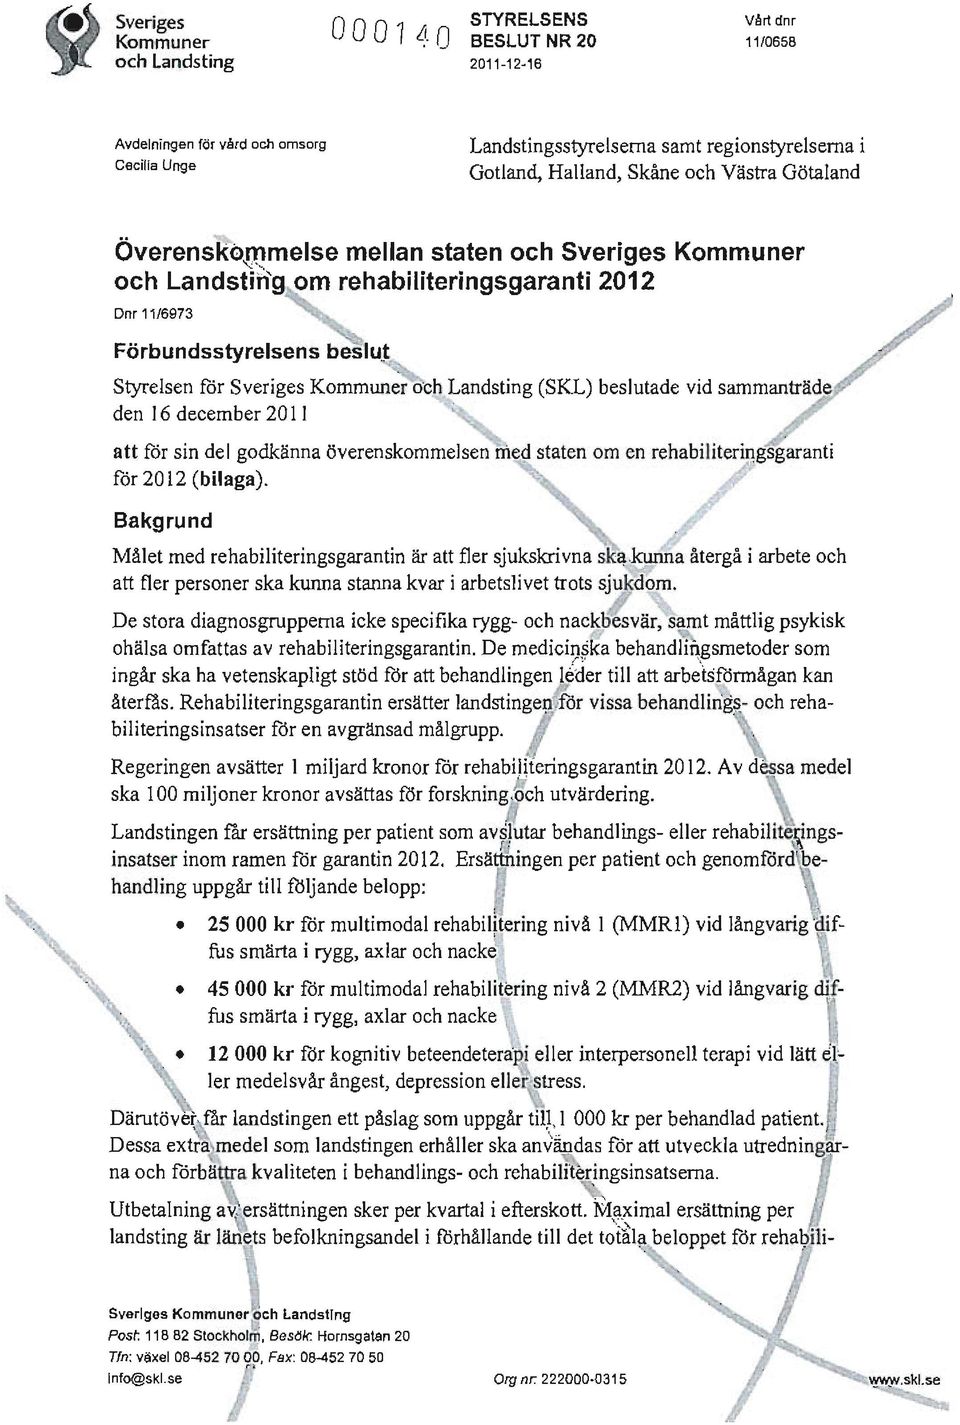 Styrelsen för Sveriges Kommuner och Landsting (SKL) beslutade vid sammanträde den 16 december 2011 att för sin del godkänna överenskommelsen meq staten om en rehabiliteriugsgaranti för 2012 (bilaga).